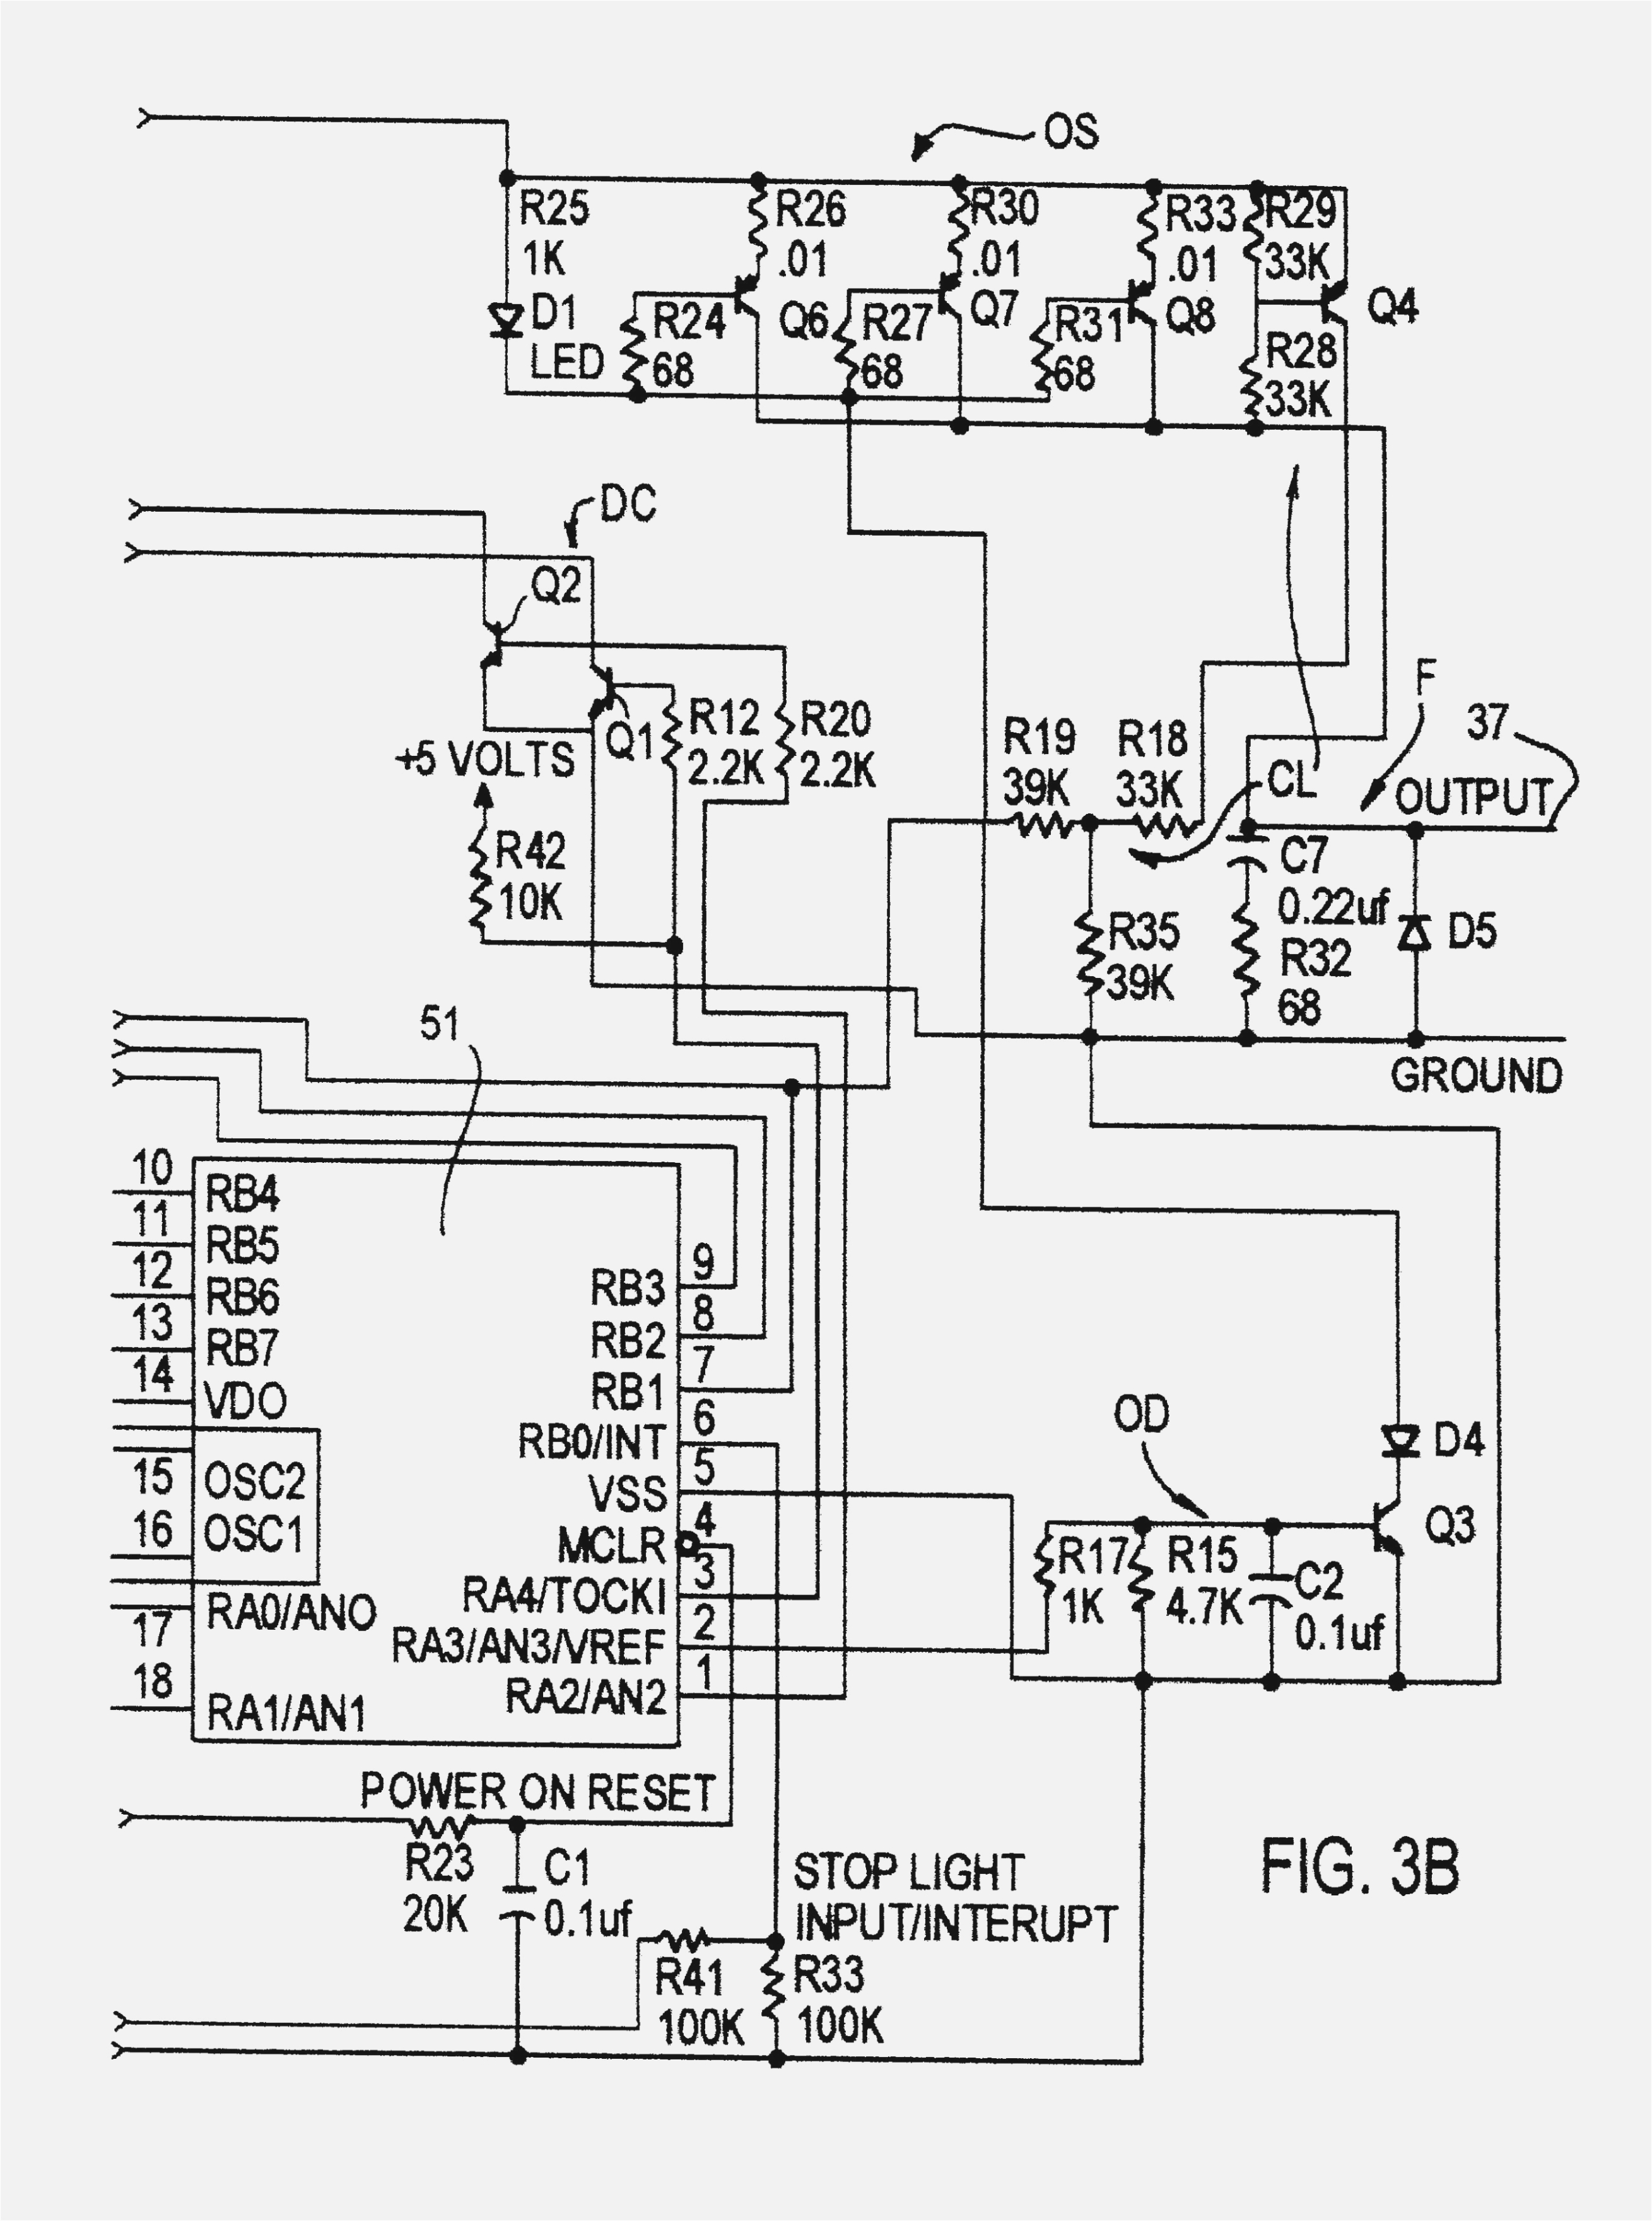 x12 wiring diagram wiring diagram homex12 wiring diagram wiring diagram today x12 amplifier wiring diagram x12